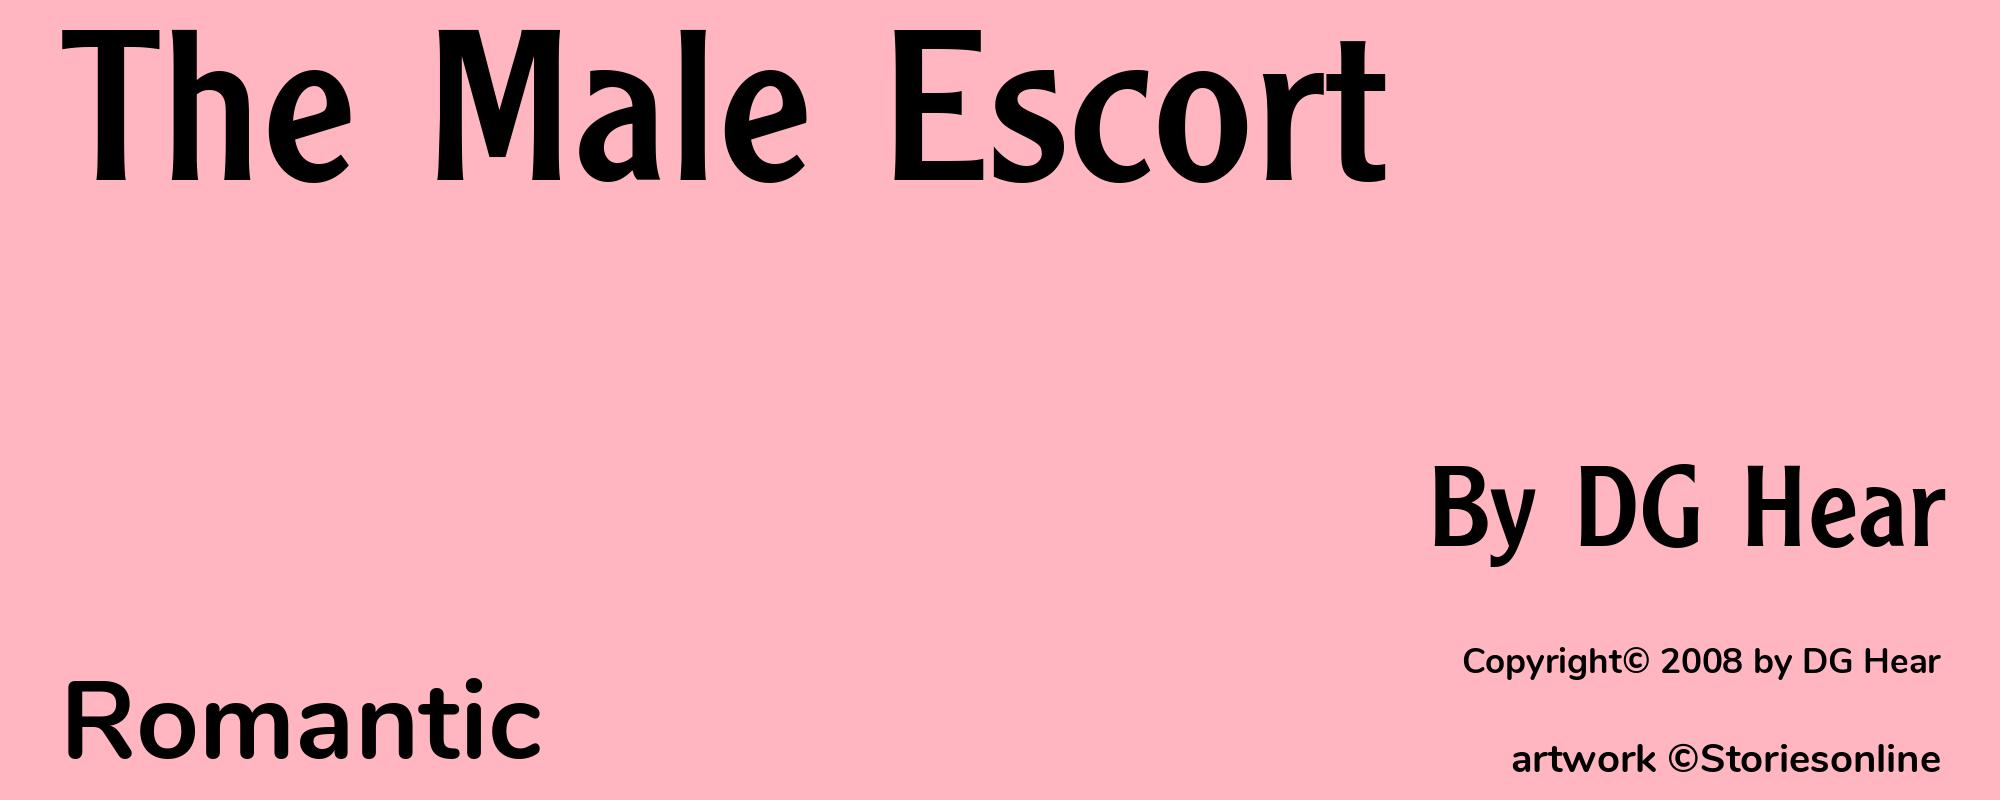 The Male Escort - Cover